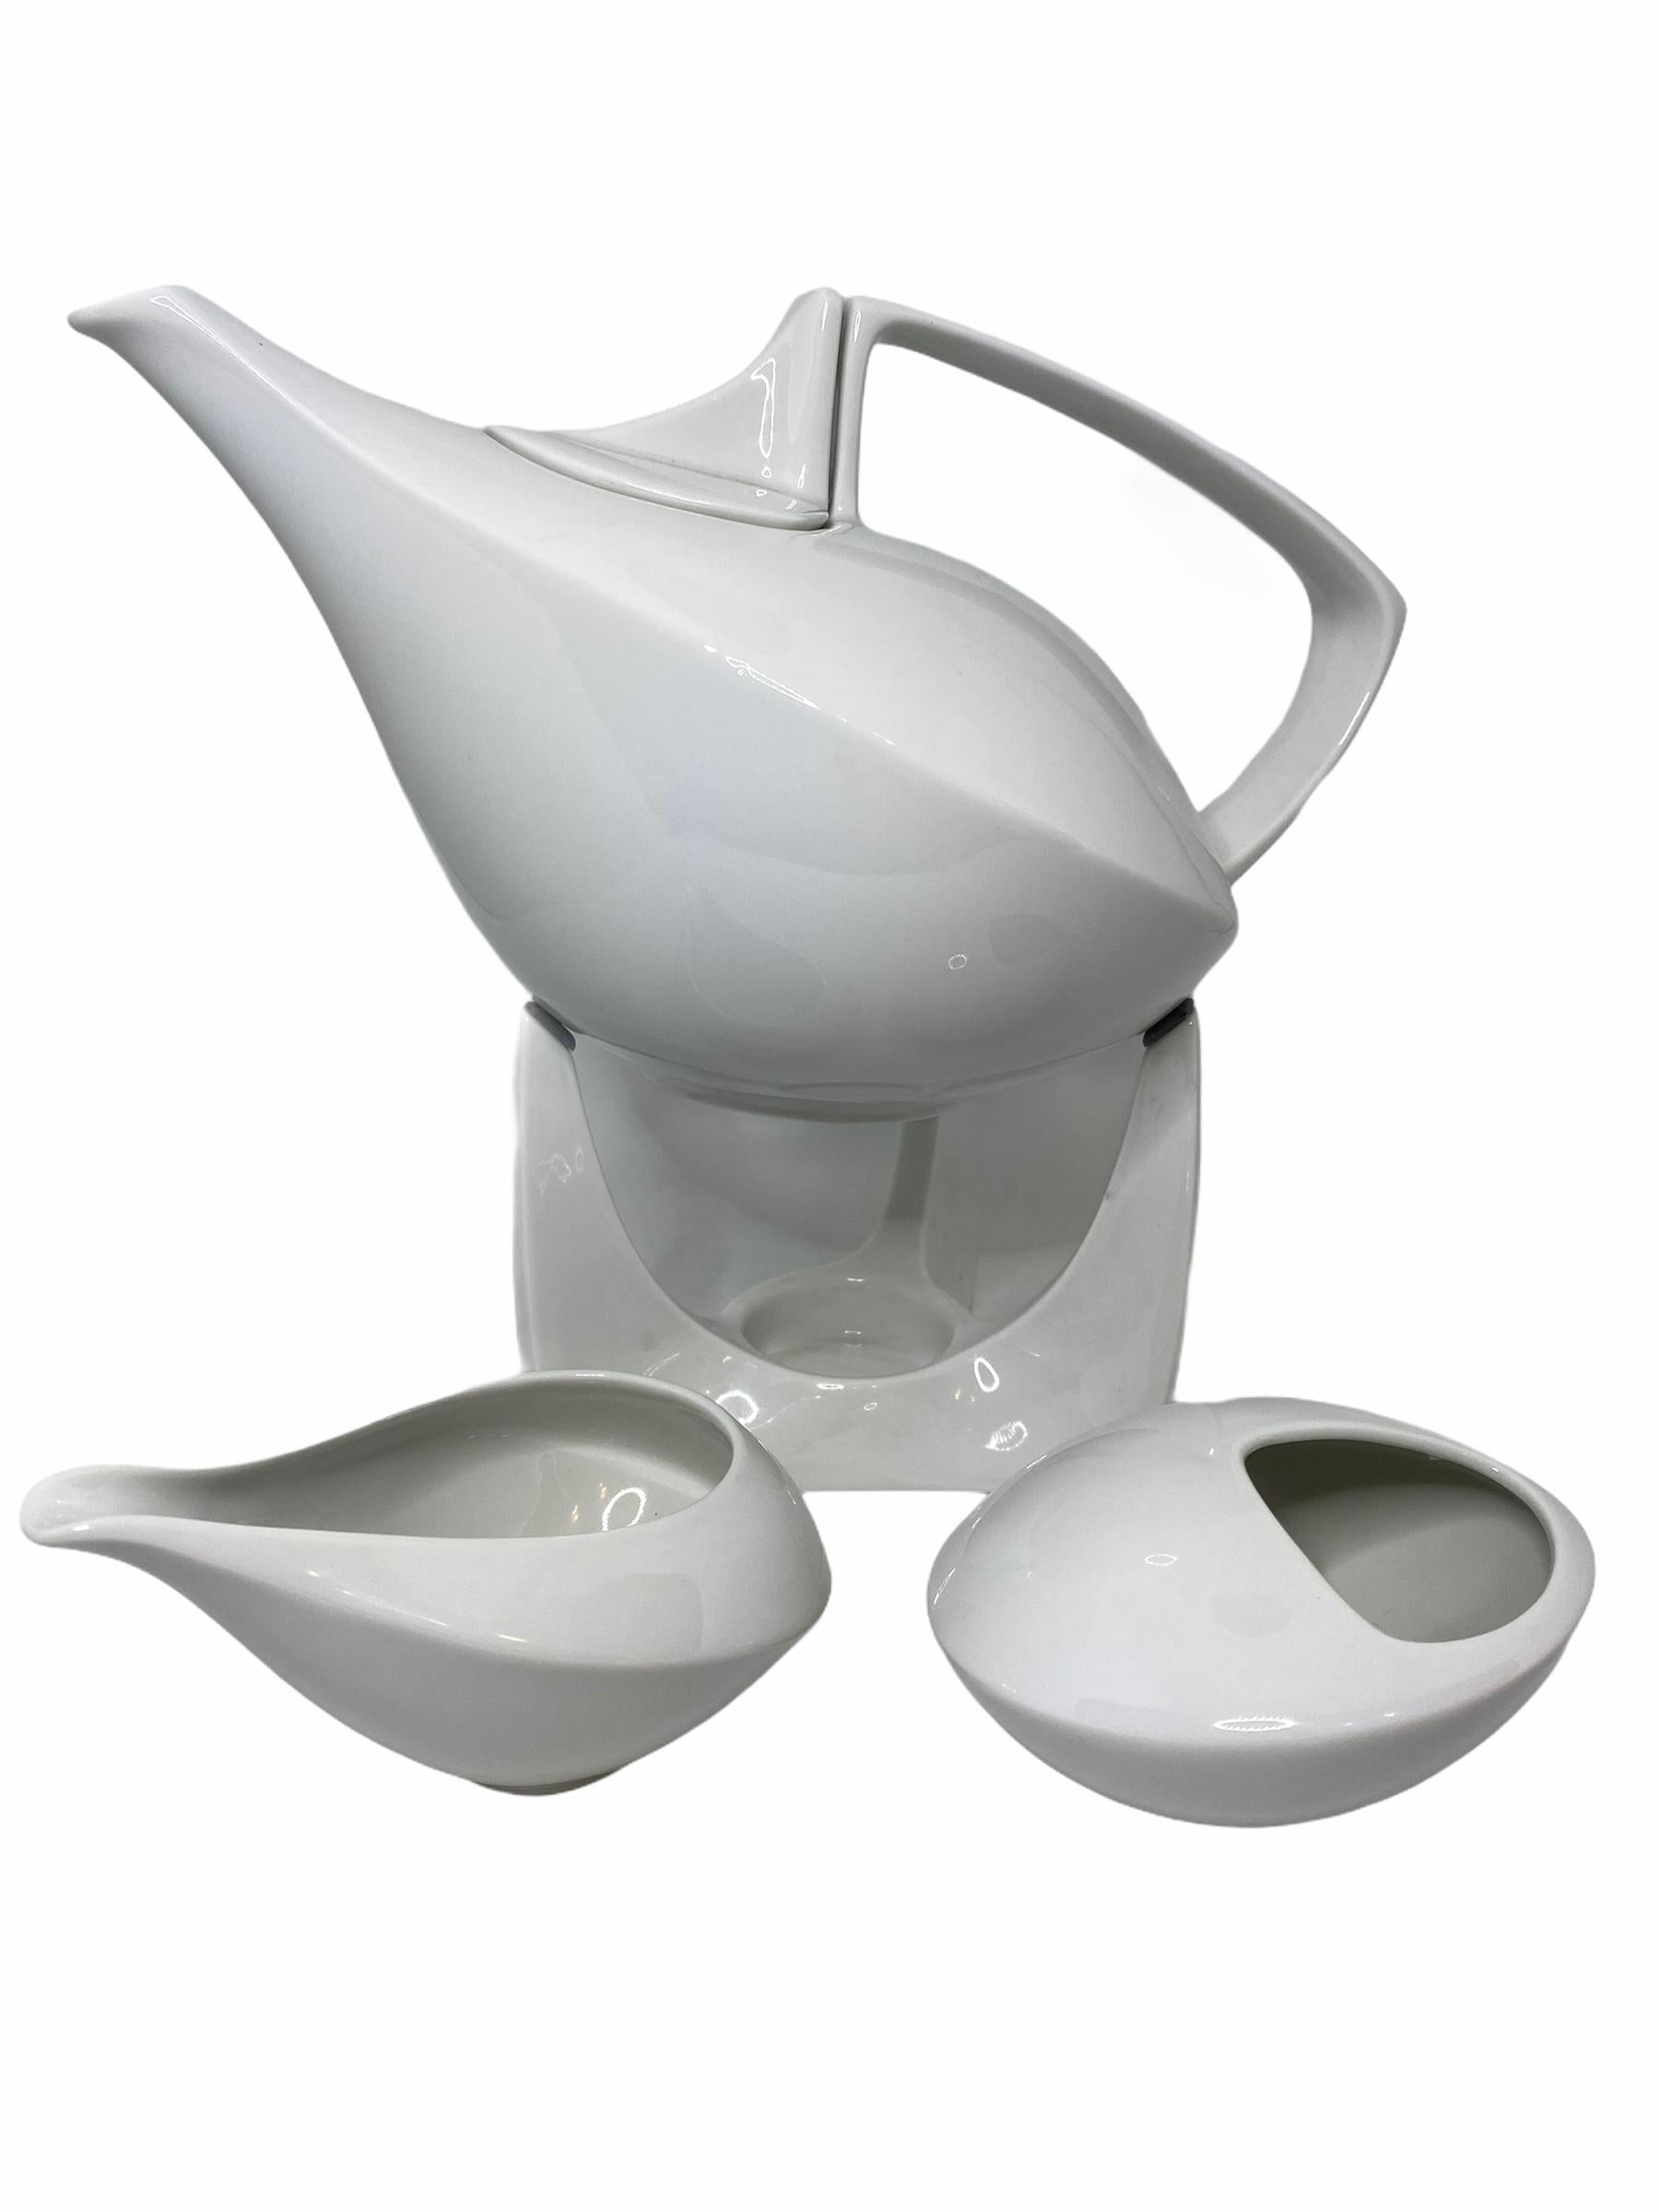 Elegante Porzellan-Teekanne mit Ständer, Zuckerdose und Sahnekännchen, Ständer mit Einsatz für Teelicht. 
Abmessungen: Teekanne: 5